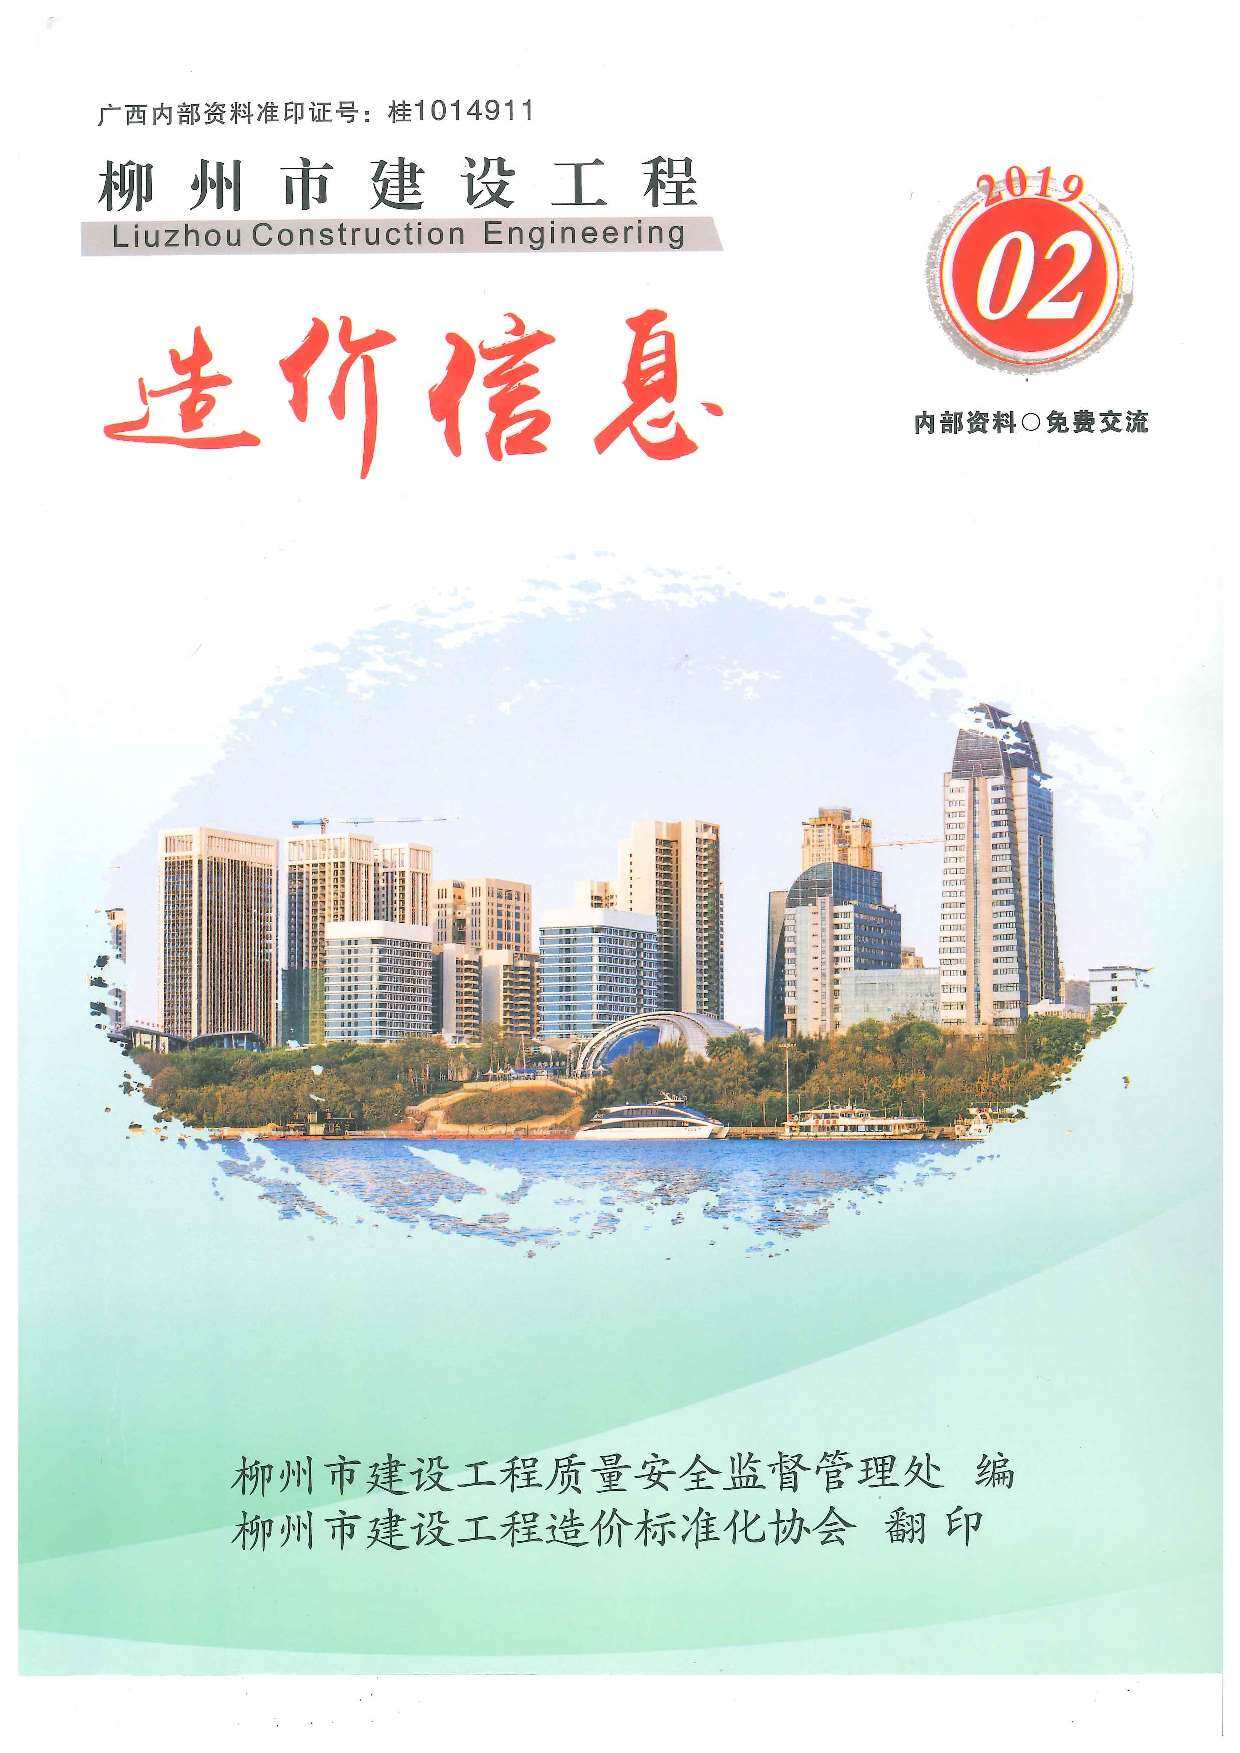 柳州市2019年2月工程造价信息期刊